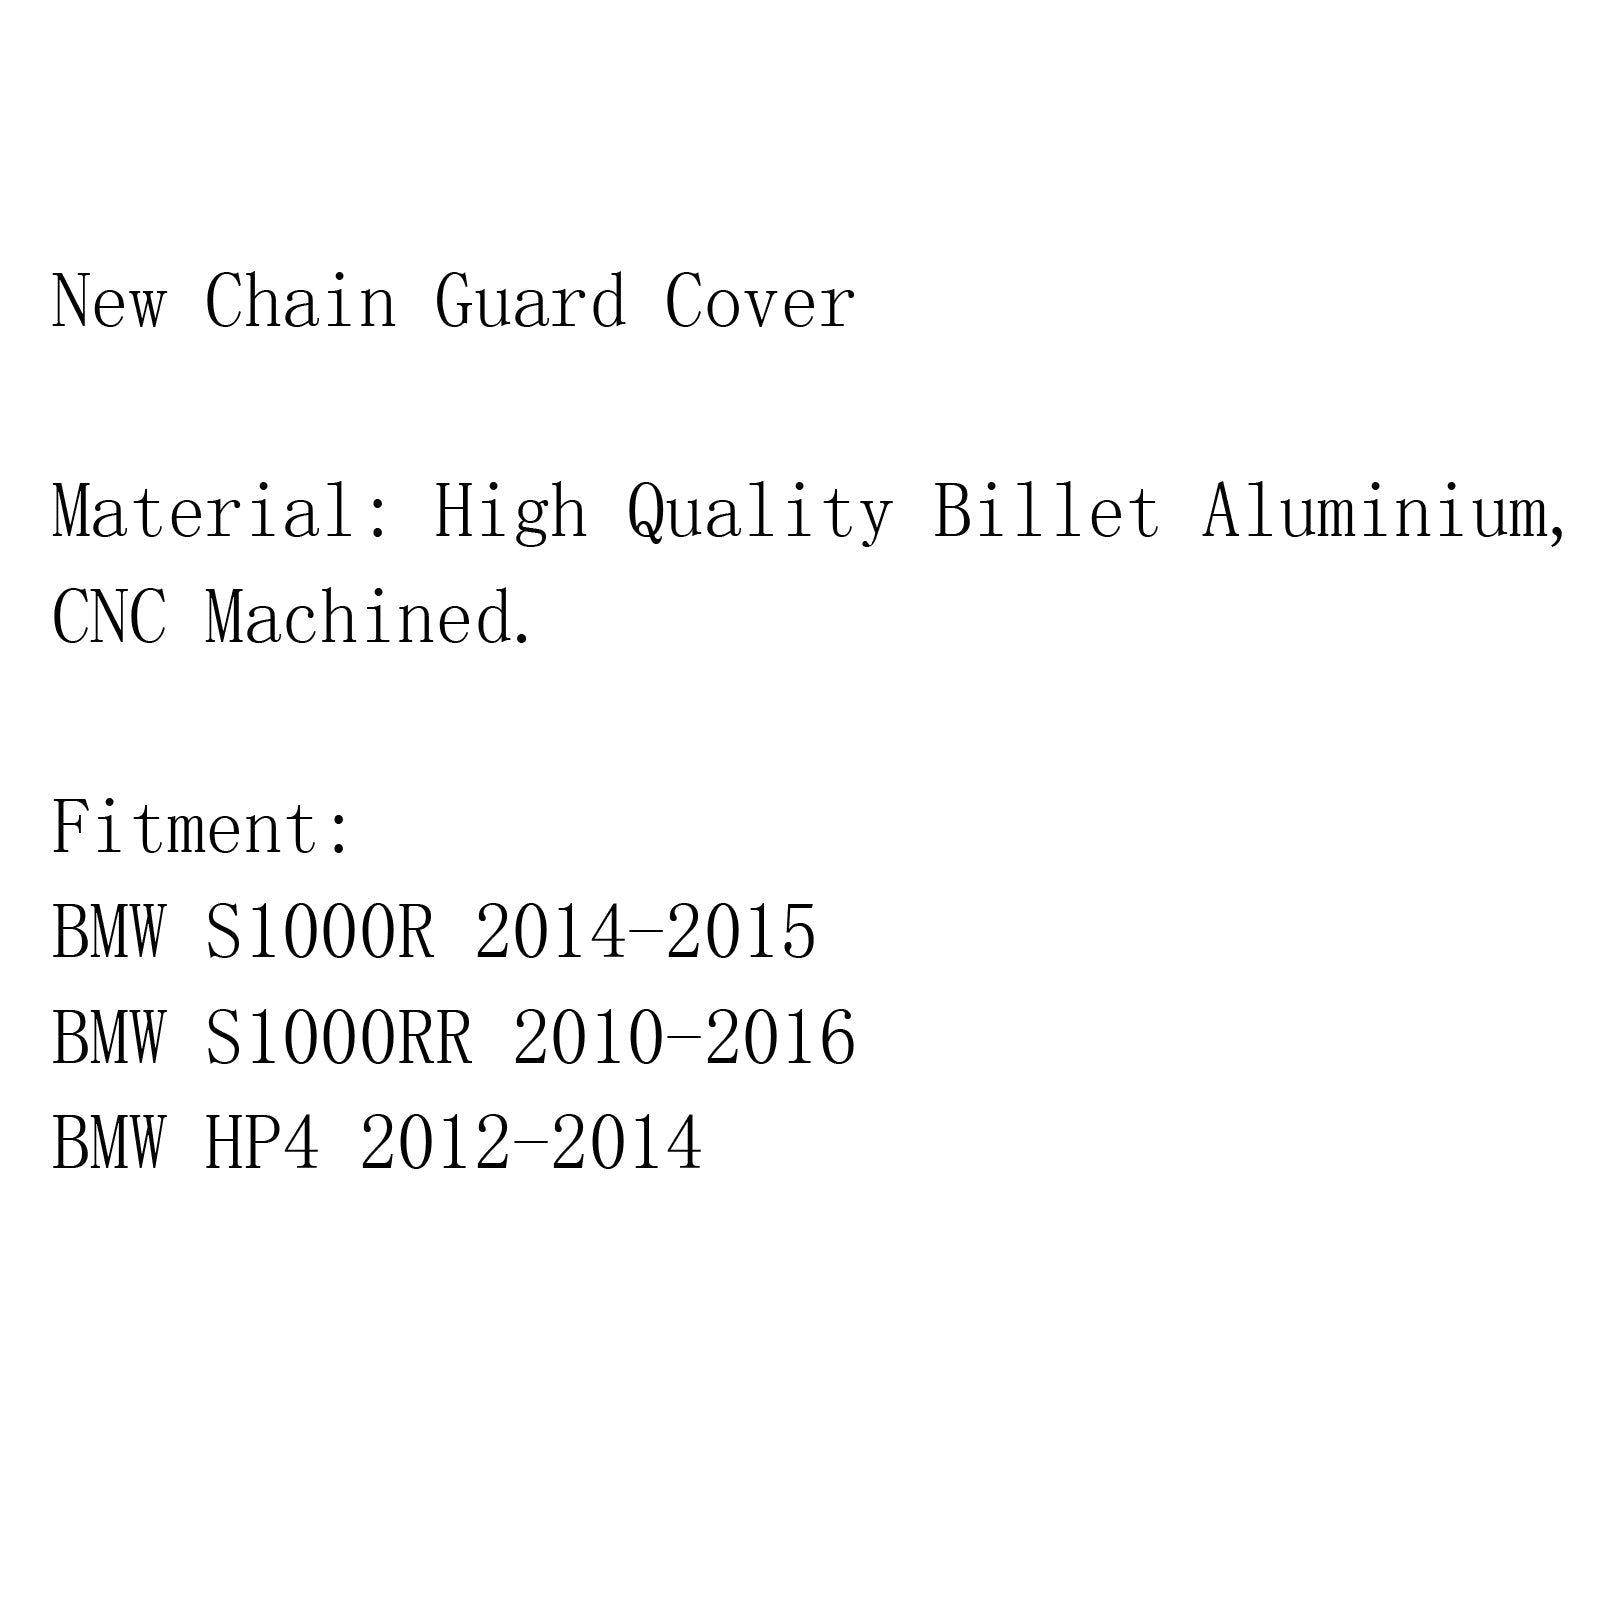 Protecteur de couverture de garde-chaîne en aluminium CNC pour BMW S1000R 14-15 S1000RR 10-16 HP4 générique